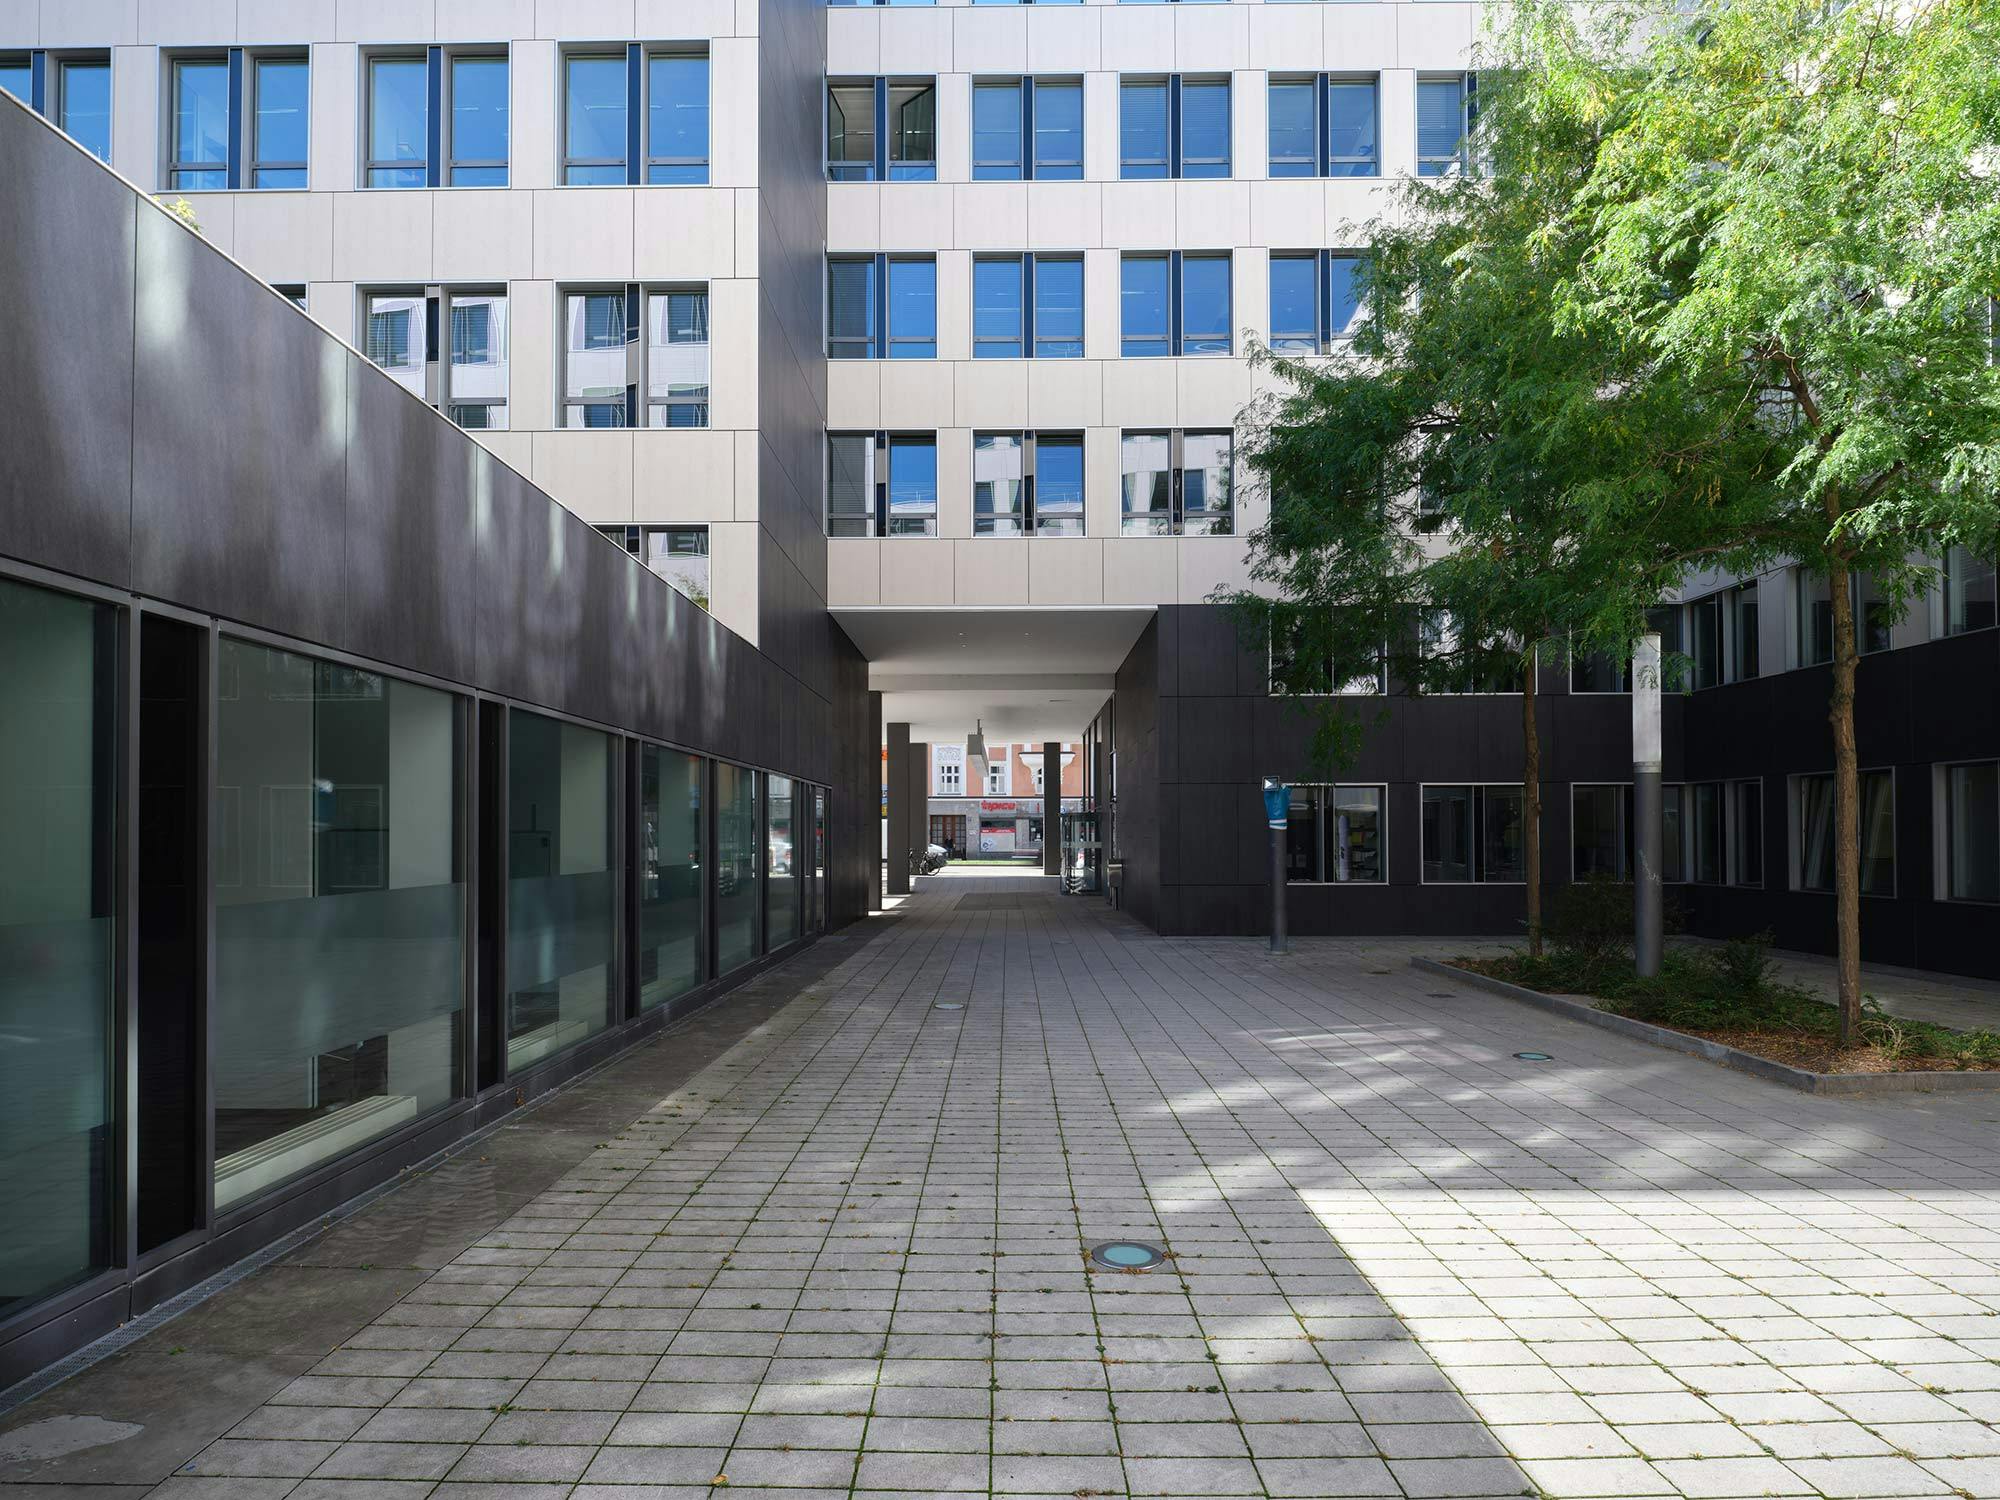 Image 58 of Fachada office building Munich.jpg?auto=format%2Ccompress&ixlib=php 3.3 in A complex Dekton facade for The Warner Building in Michigan - Cosentino